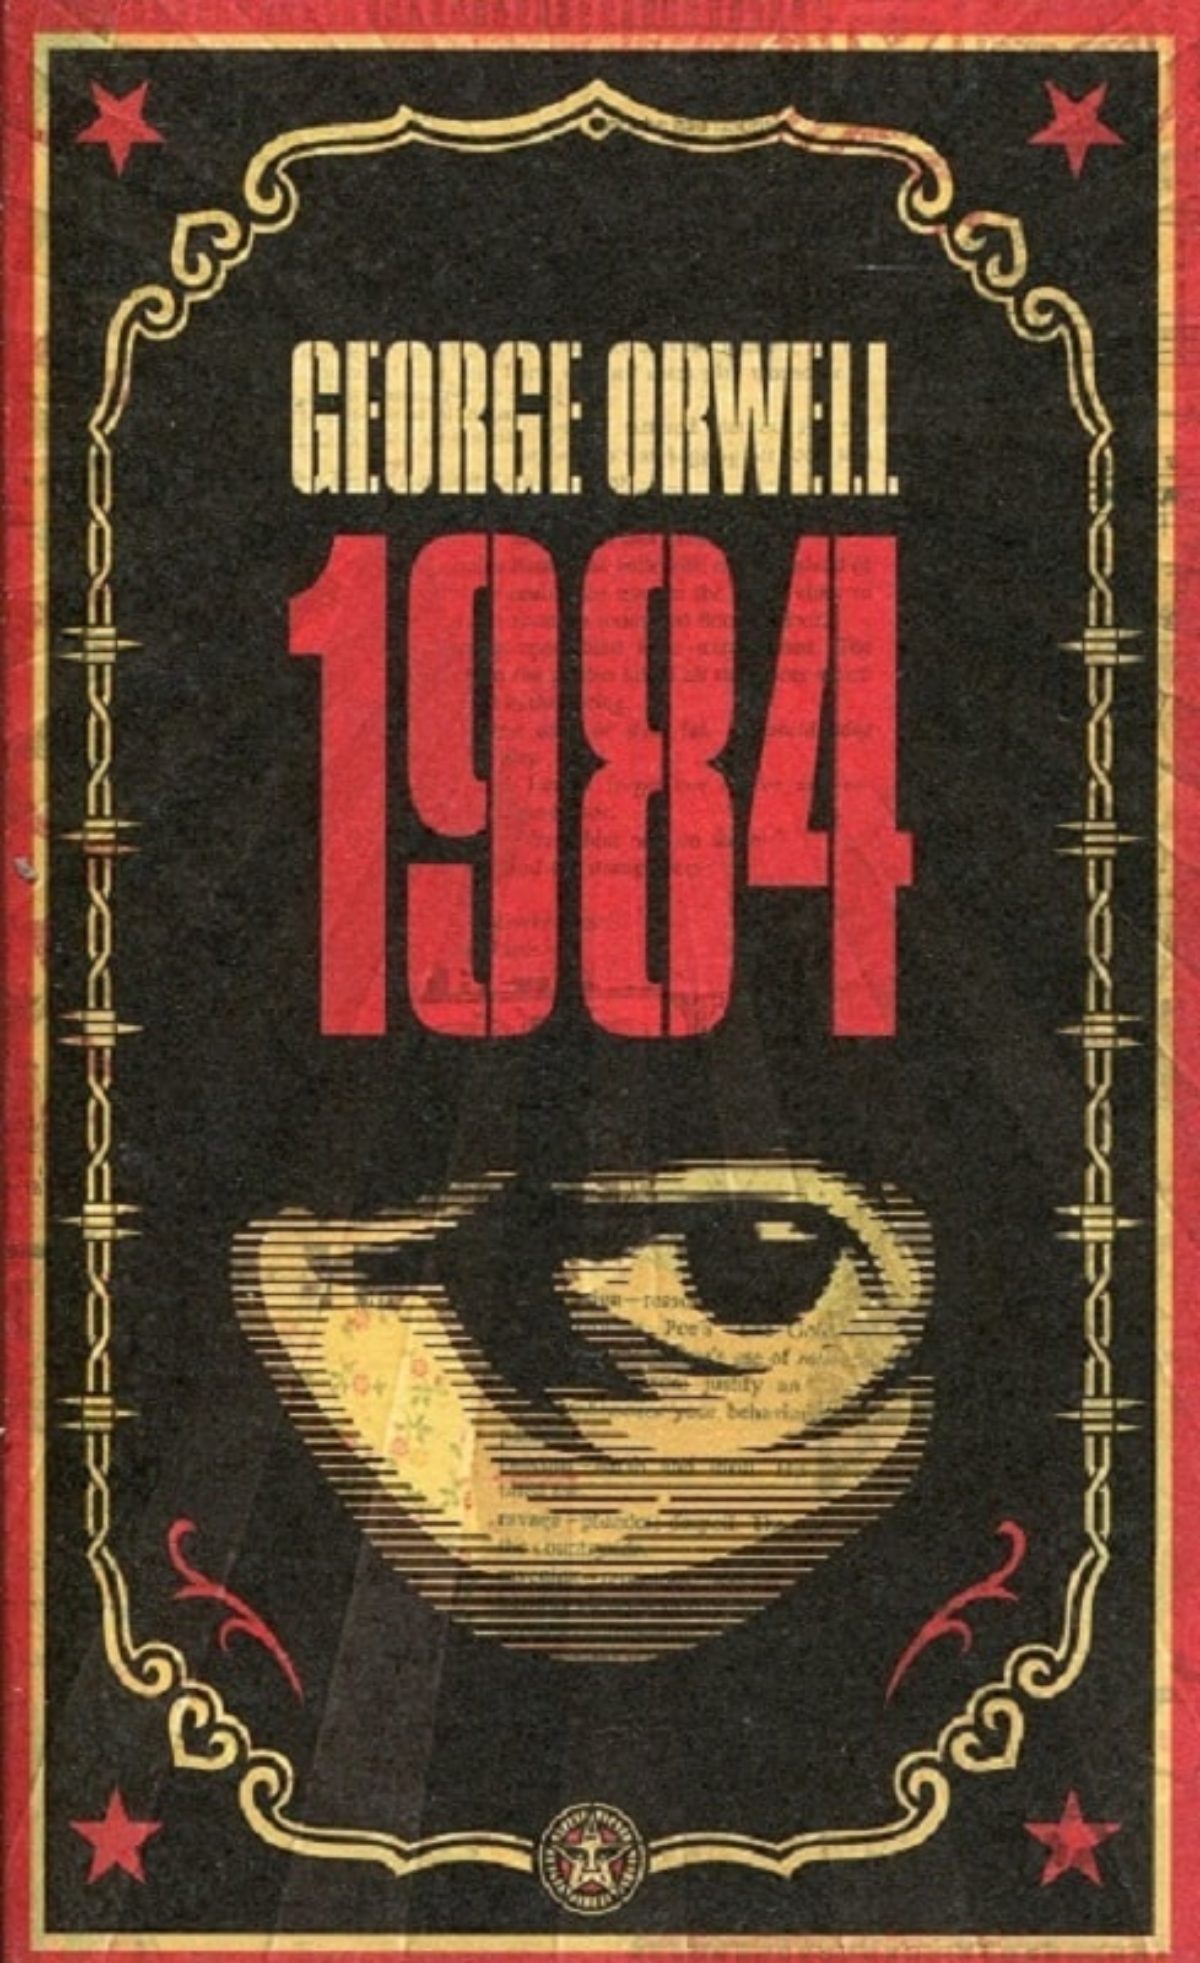 1984 george orwell plot